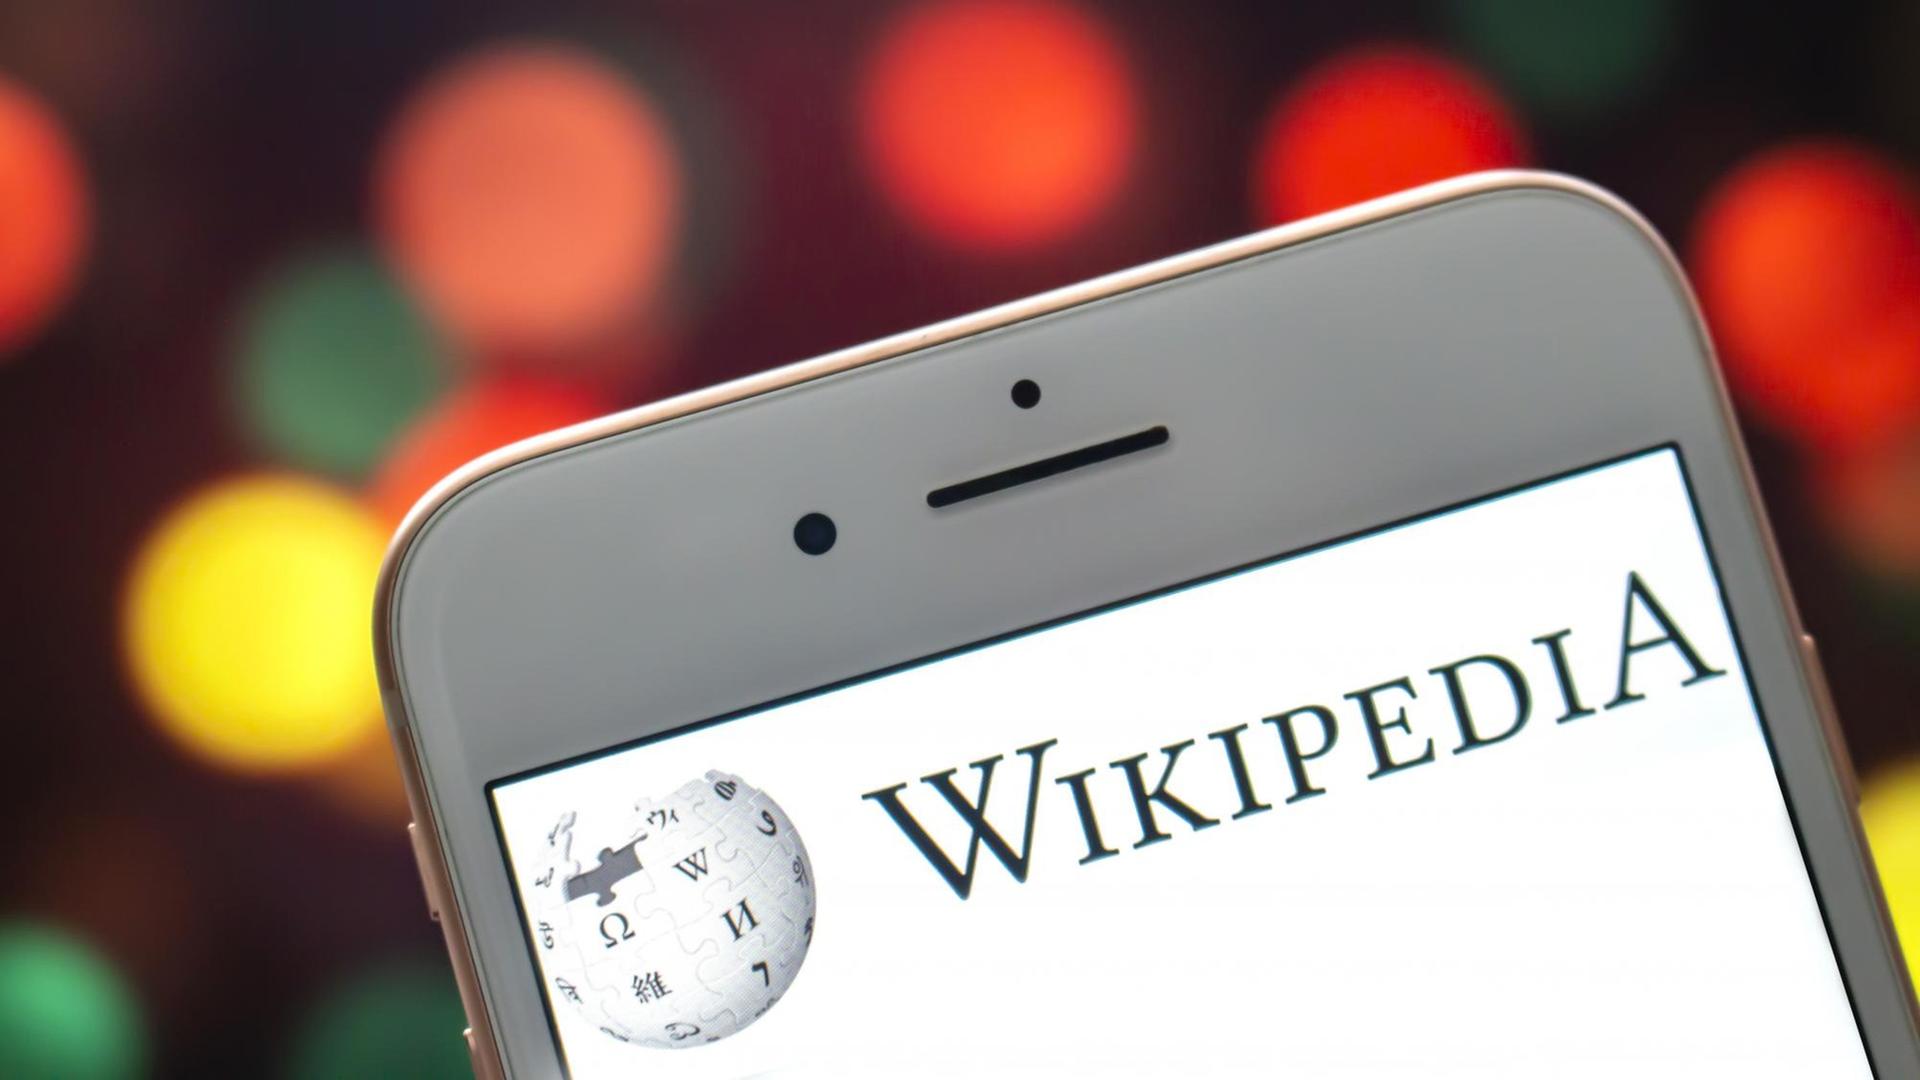 Das Wikipedia-Logo auf einem iPhone-Display.